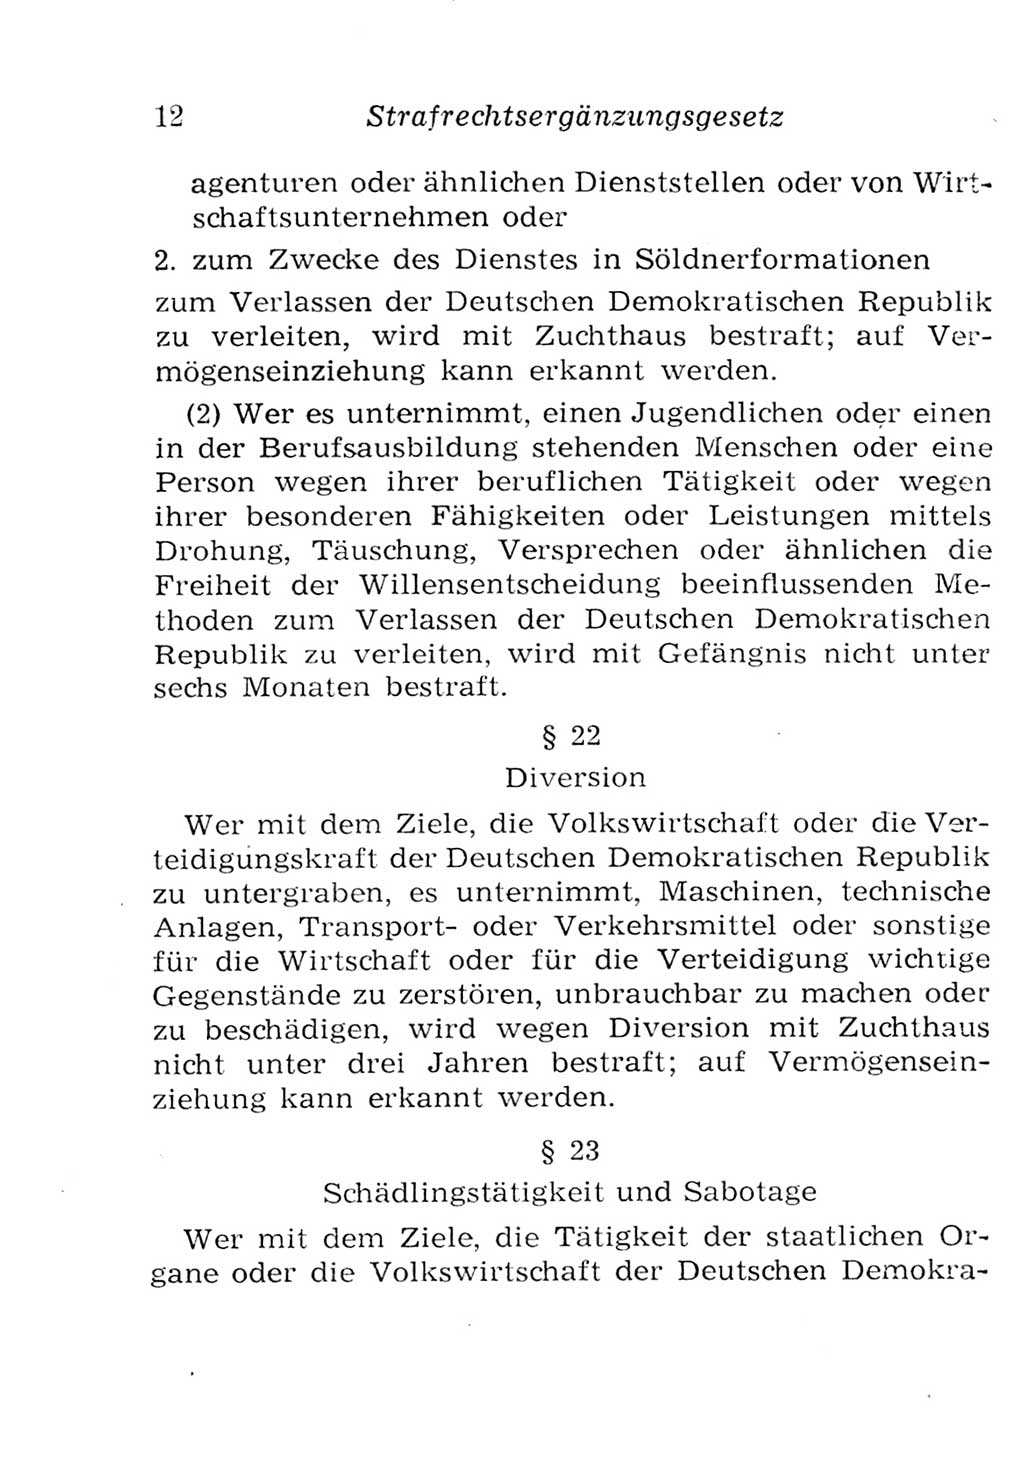 Strafgesetzbuch (StGB) und andere Strafgesetze [Deutsche Demokratische Republik (DDR)] 1957, Seite 12 (StGB Strafges. DDR 1957, S. 12)